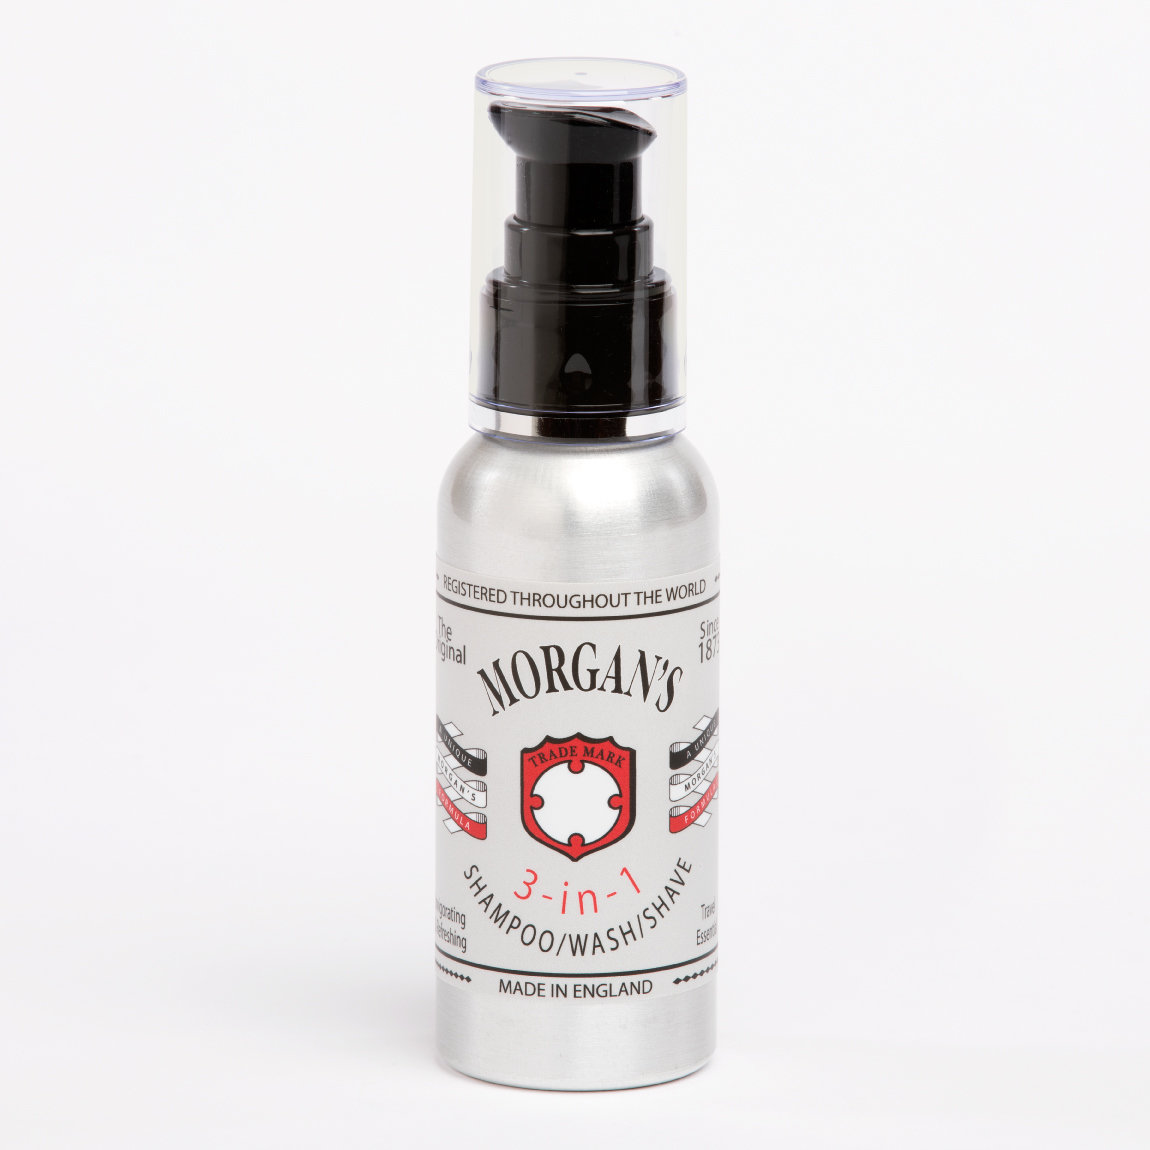 MORGAN'S 3 in 1 shampoo/wash/shave - 3 в 1 Шампунь, гель для душа, средство для бритья 100 мл